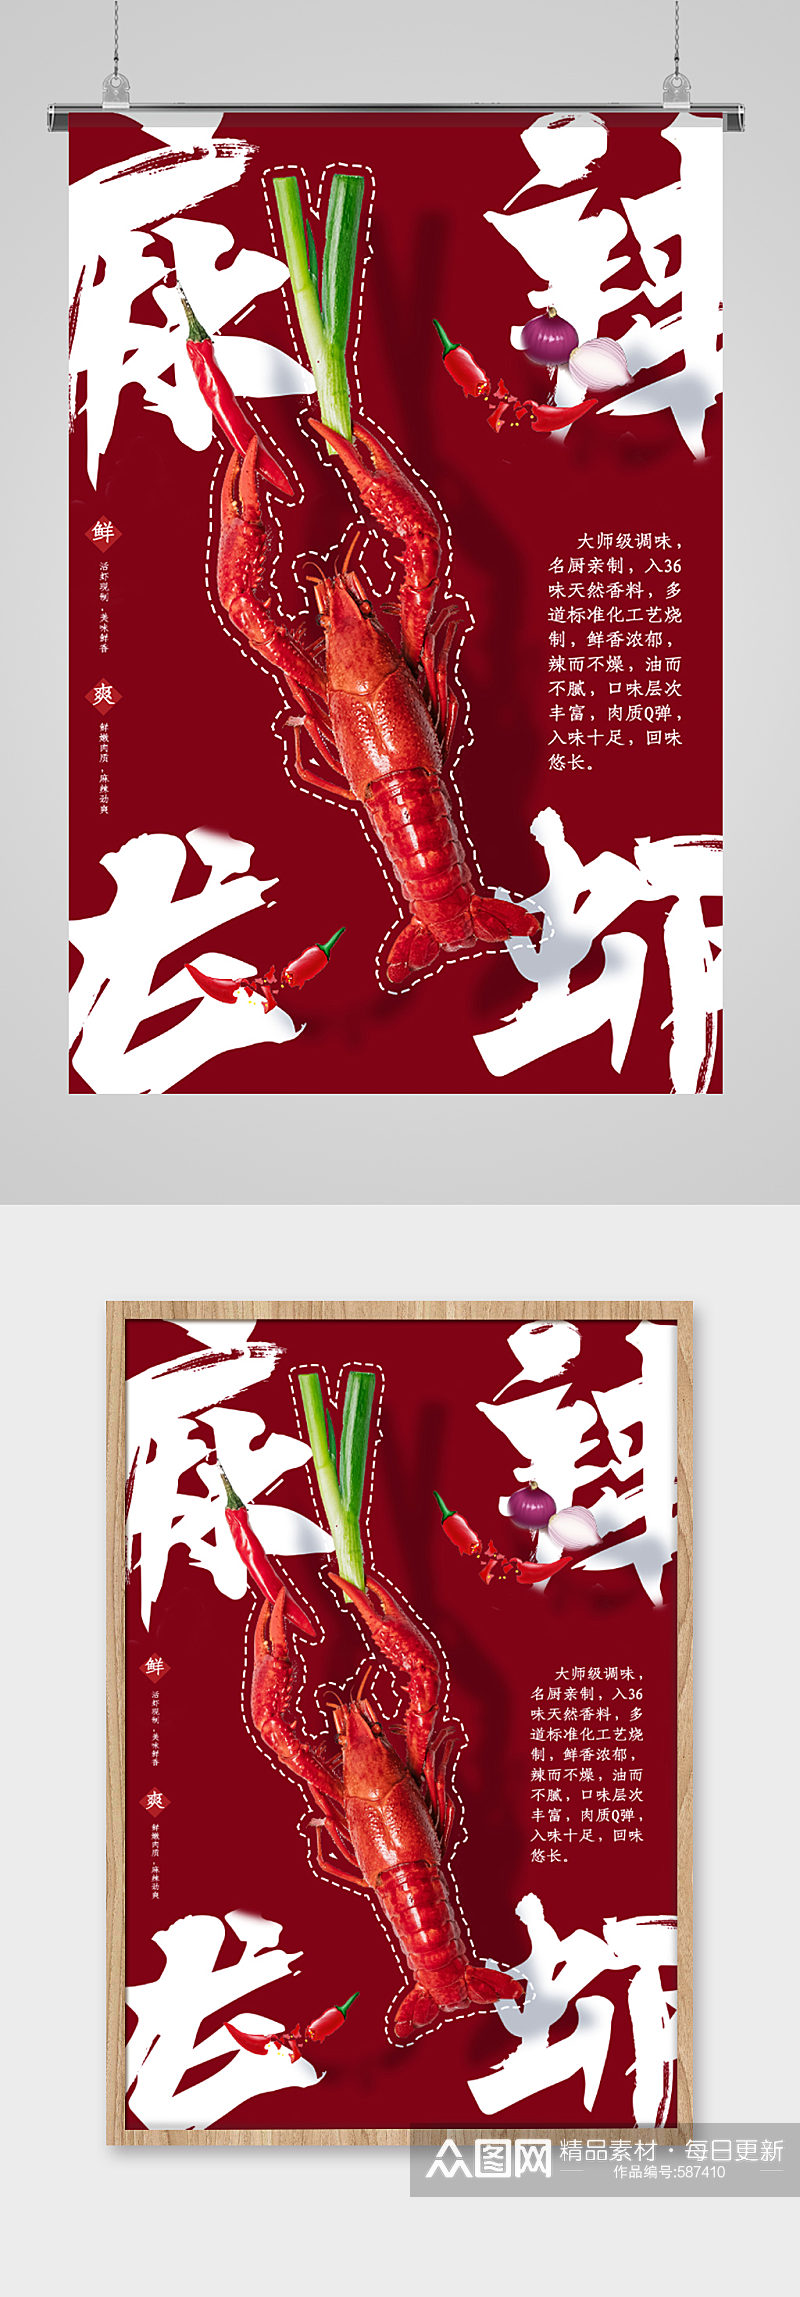 麻辣龙虾创意美食海报素材